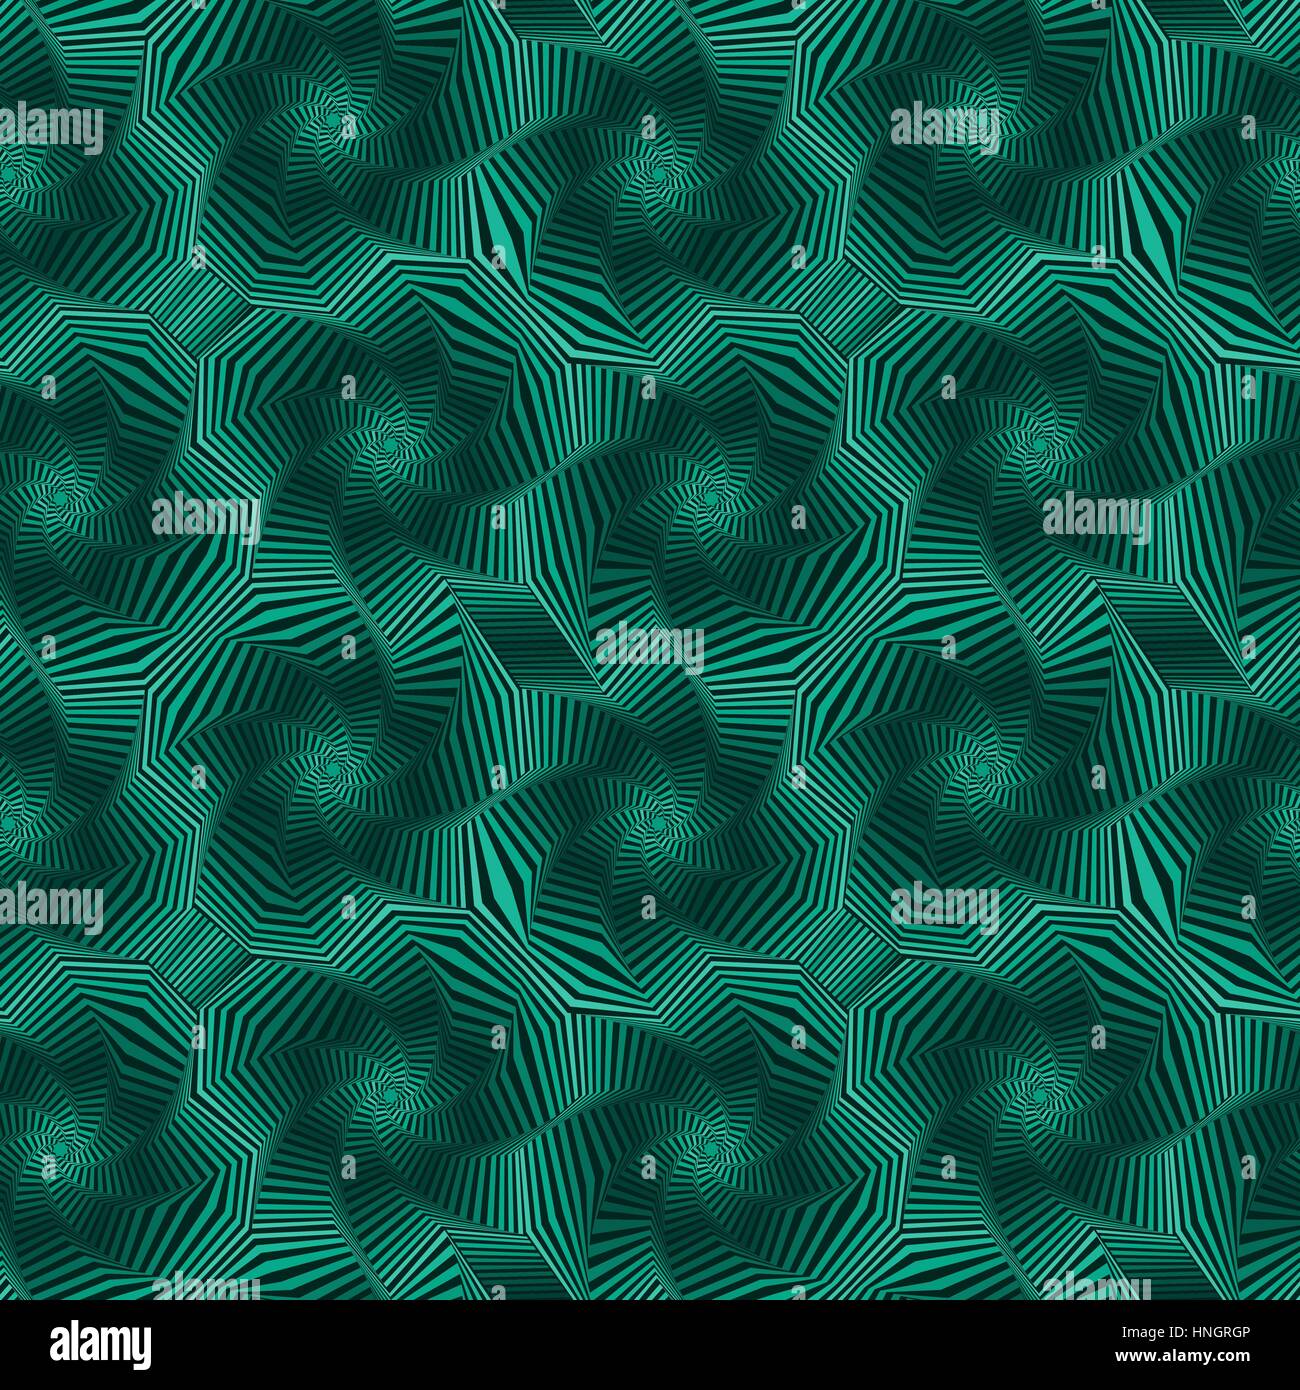 Abstract vector transparente avec motif étoile octogonale concentriques formant les séquences dans des teintes vert Illustration de Vecteur